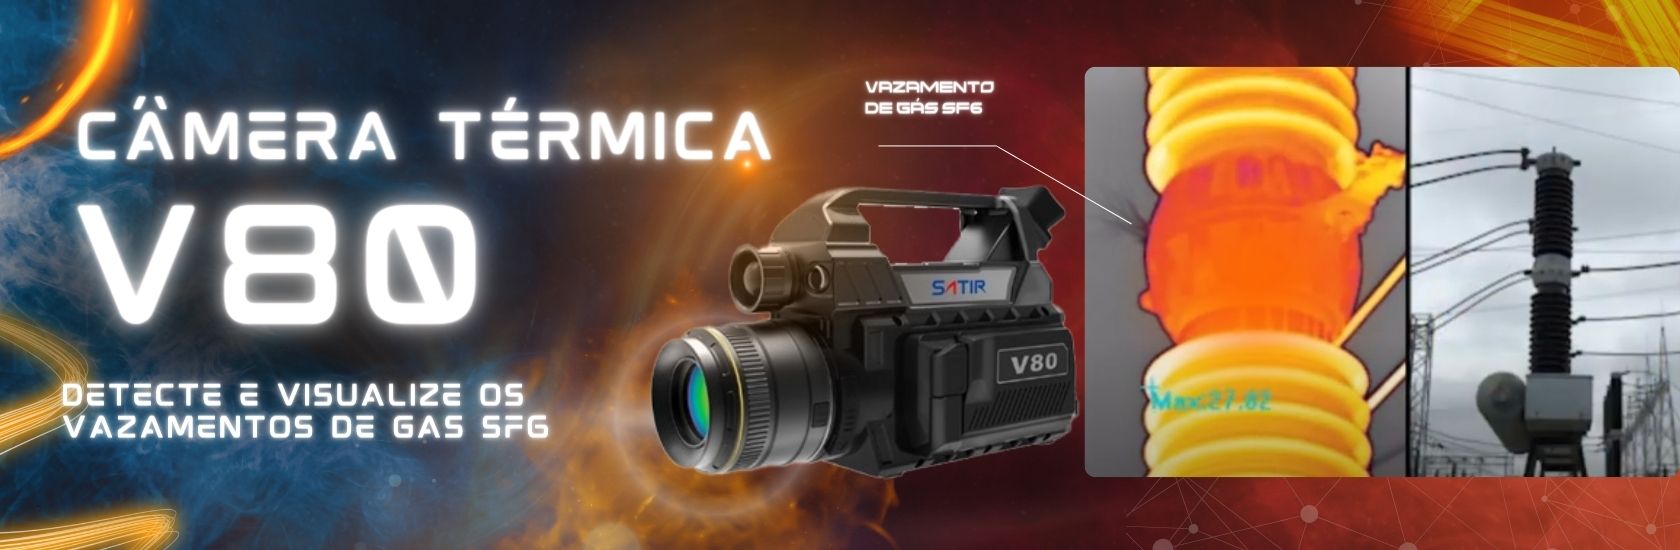 Câmera térmica V80